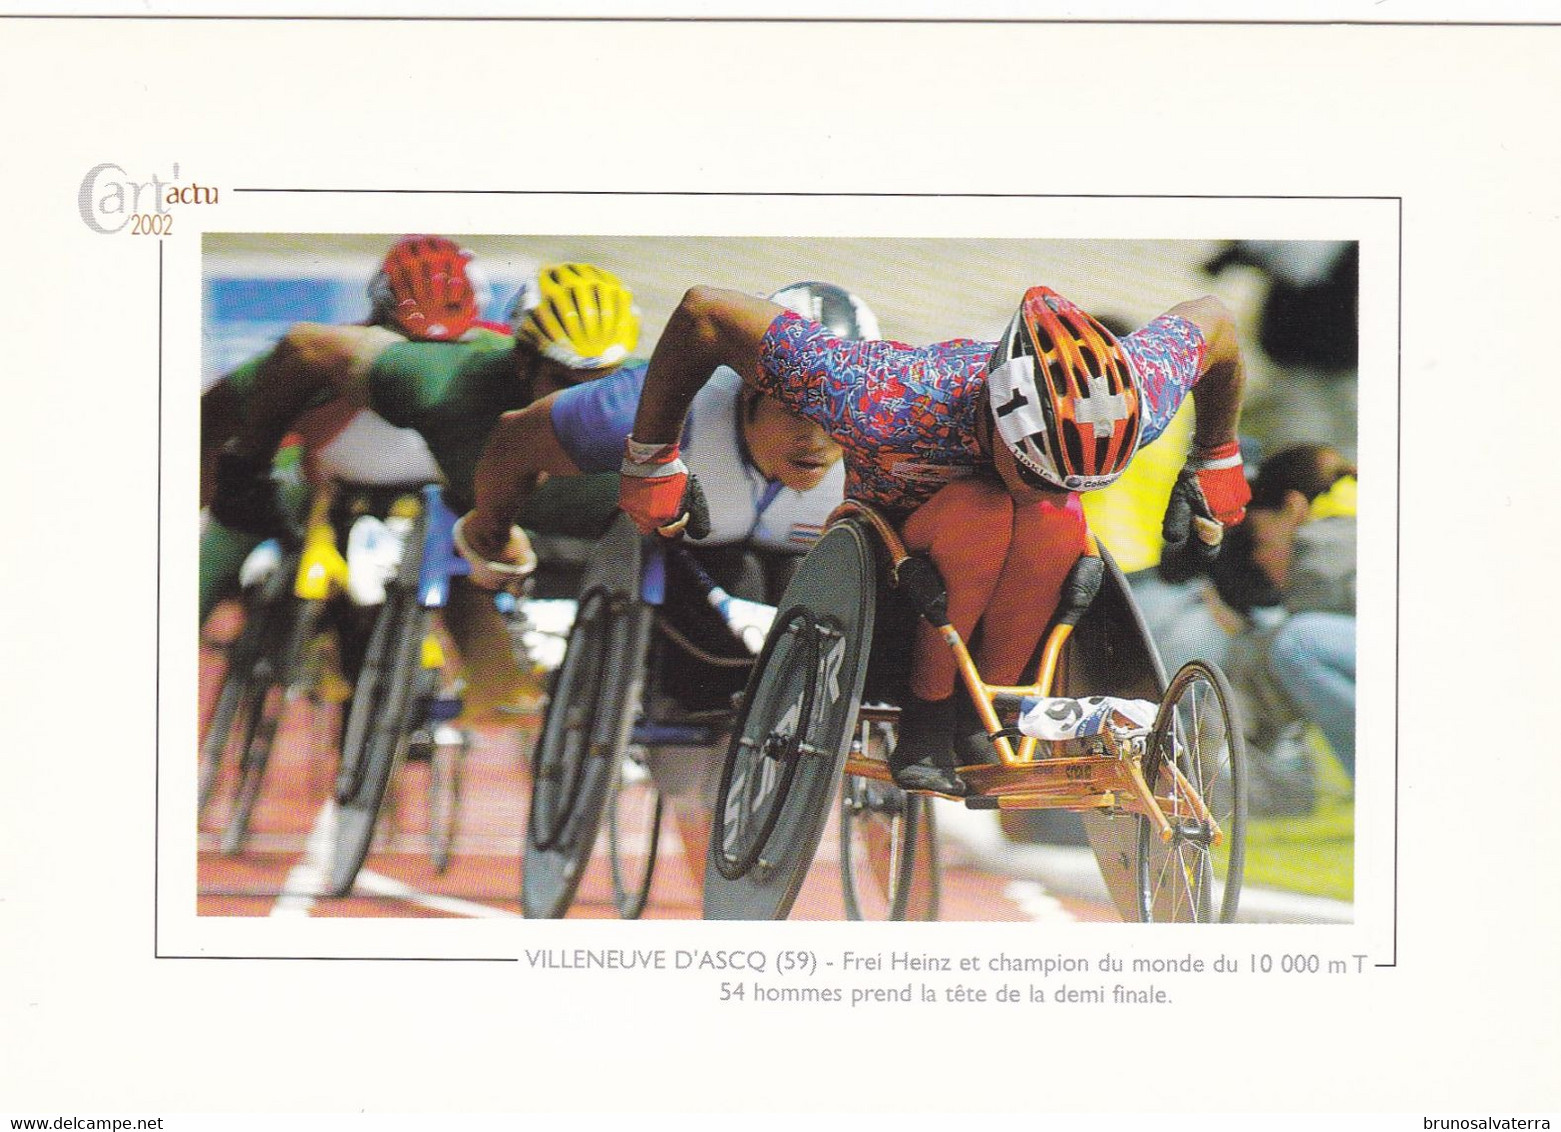 VILLENEUVE D'ASCQ - Frei Heinz Et Champion Du Monde Du 10.000 M... - Cart'actu 2002 N° 58 - Photo Philippe Huguen - Villeneuve D'Ascq